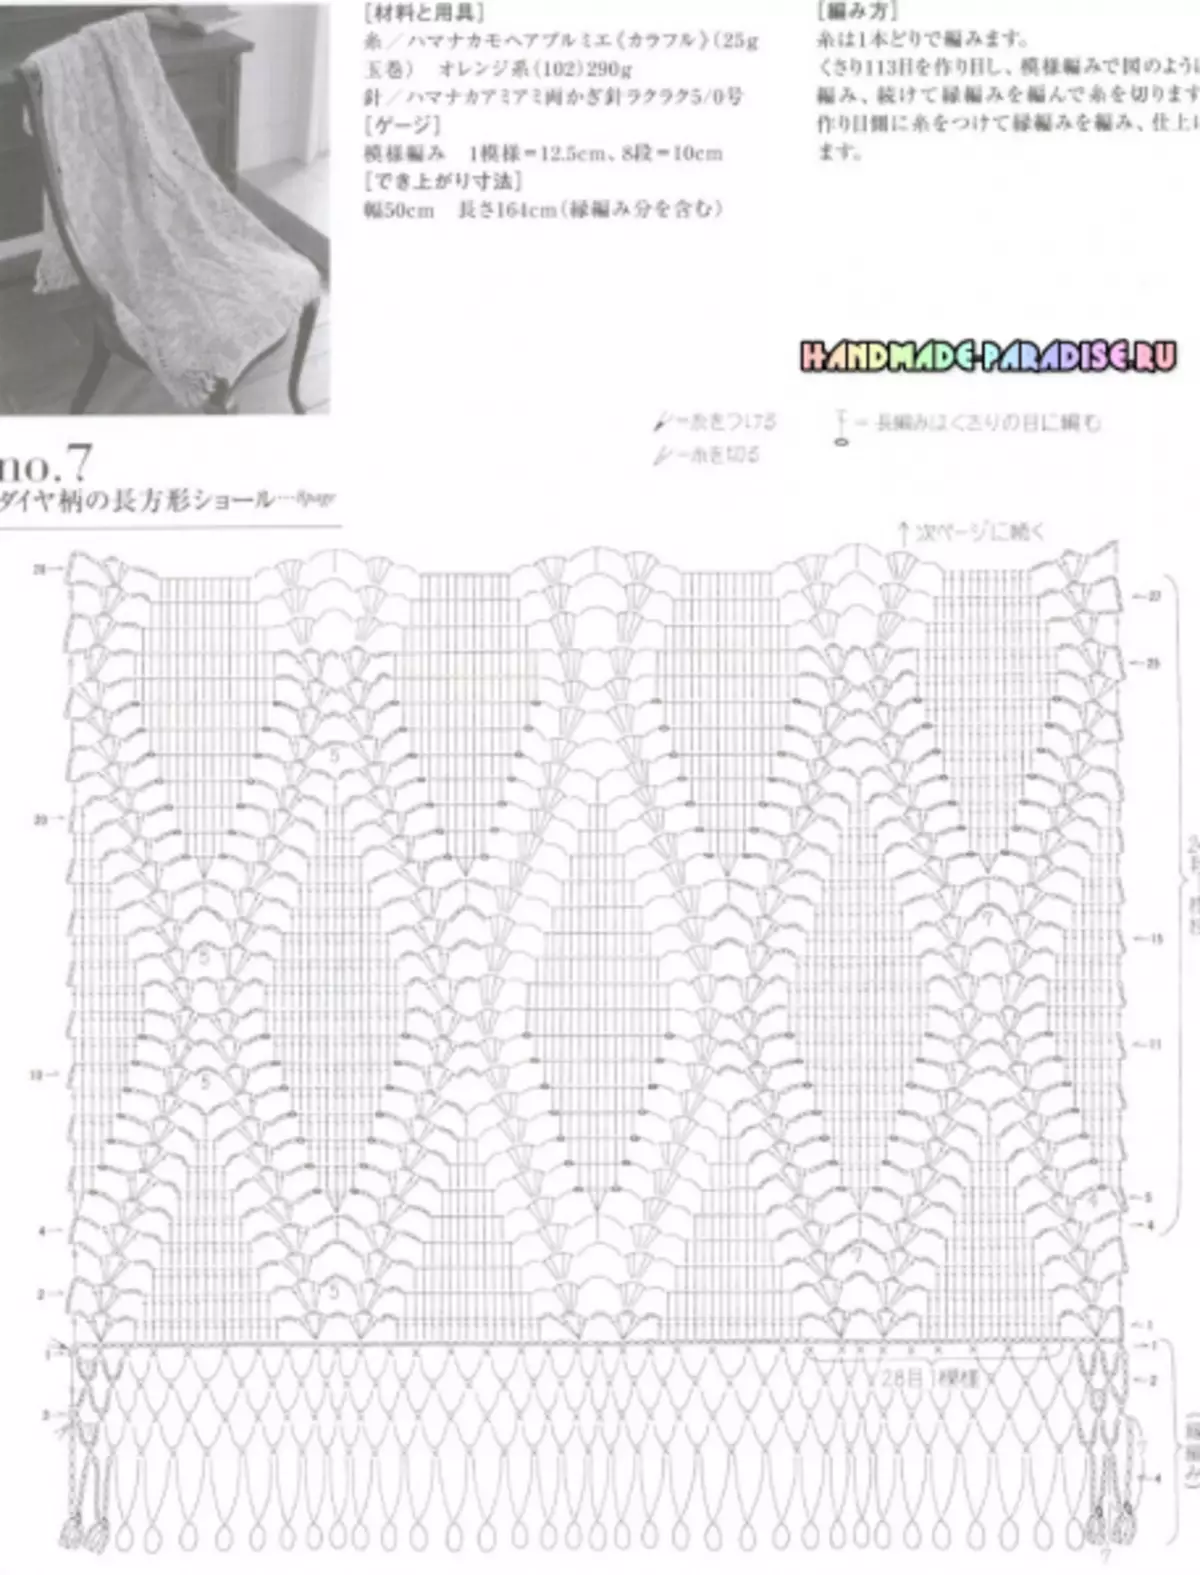 Stilfuld strikkede hæklet. Japansk magasin med ordninger